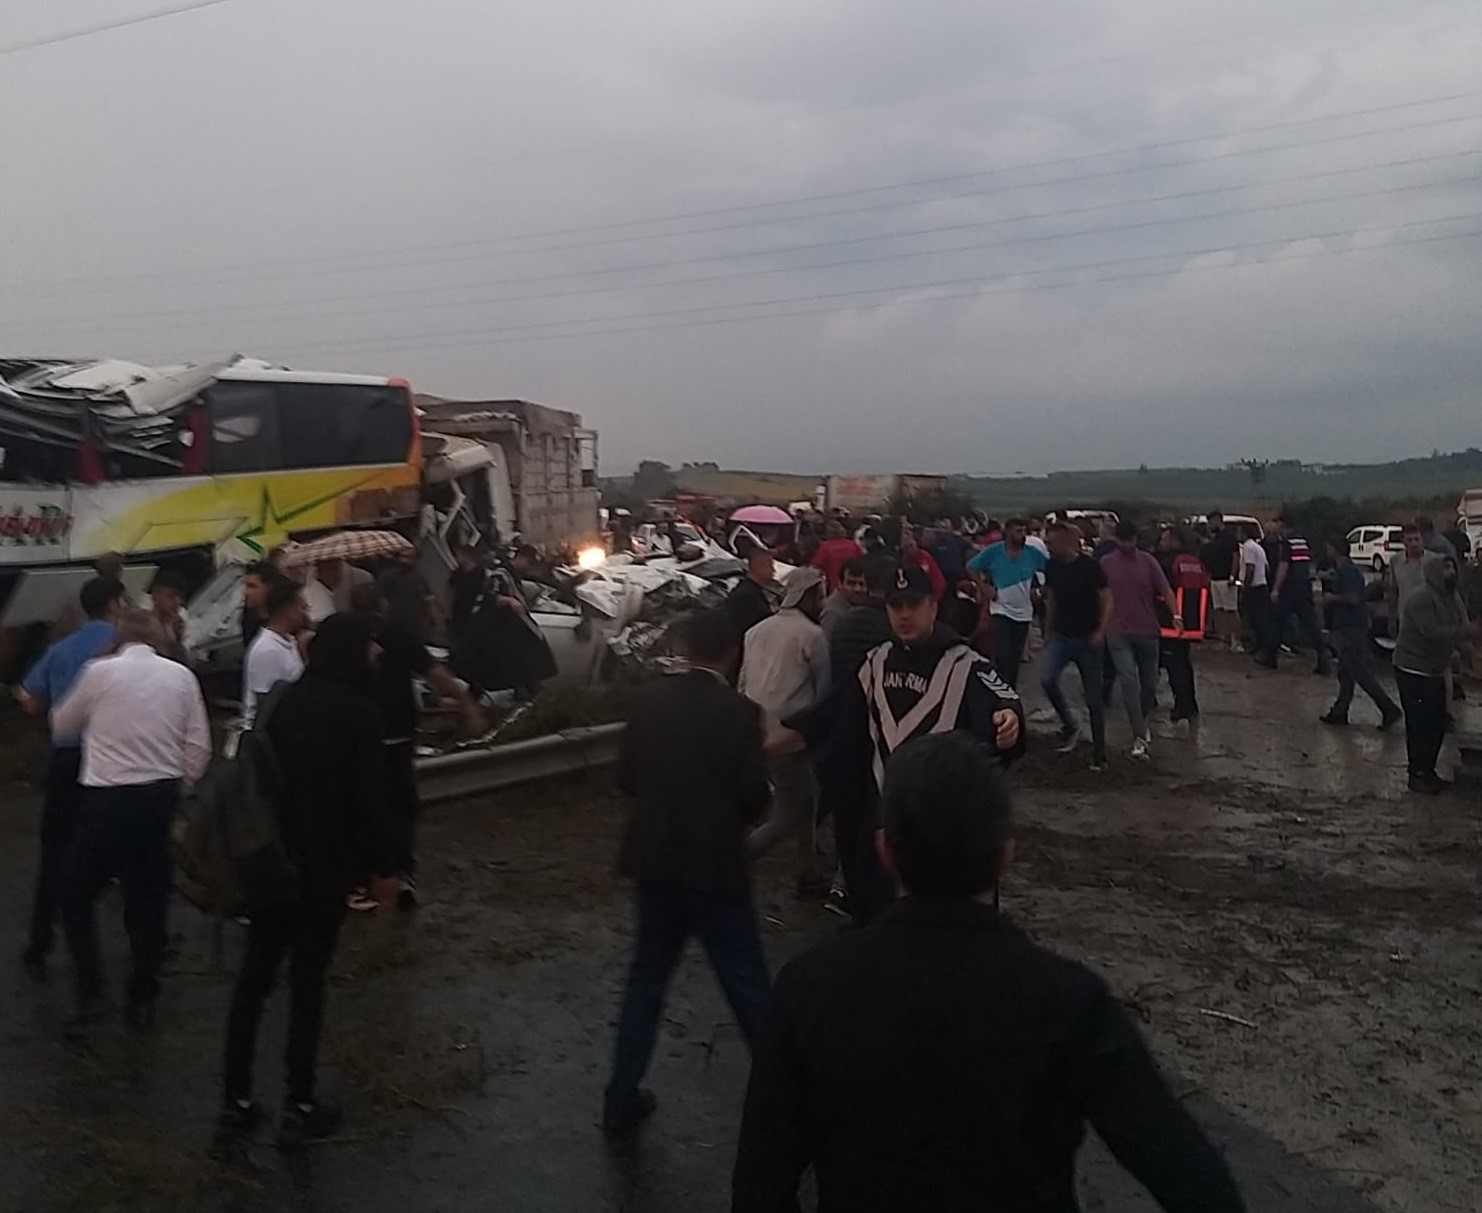 Mersin Gaziantep Tag Otoyolunda Zincirleme Trafik Kazası Çok Sayıda Ölü Ve Yaralı